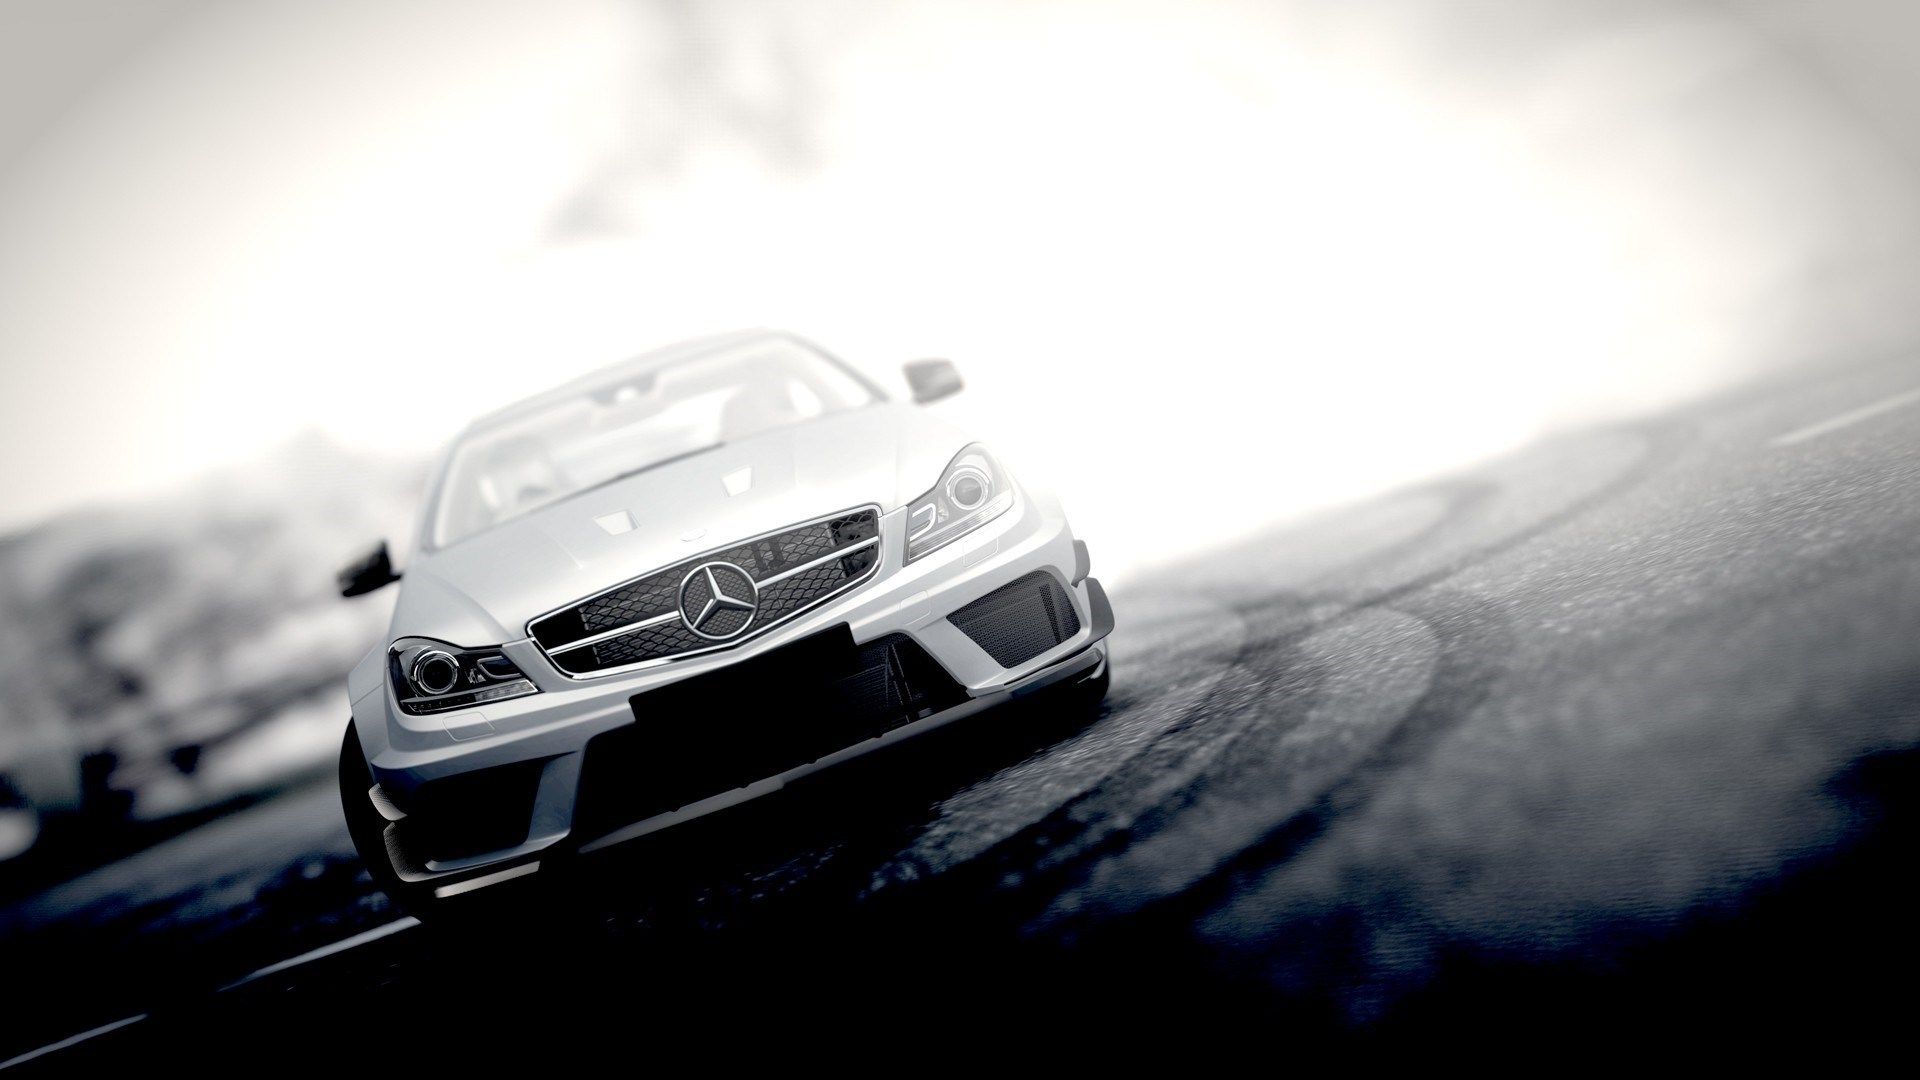 Mercedes Benz Wallpapers  Top 35 Best Mercedes Benz Backgrounds Download